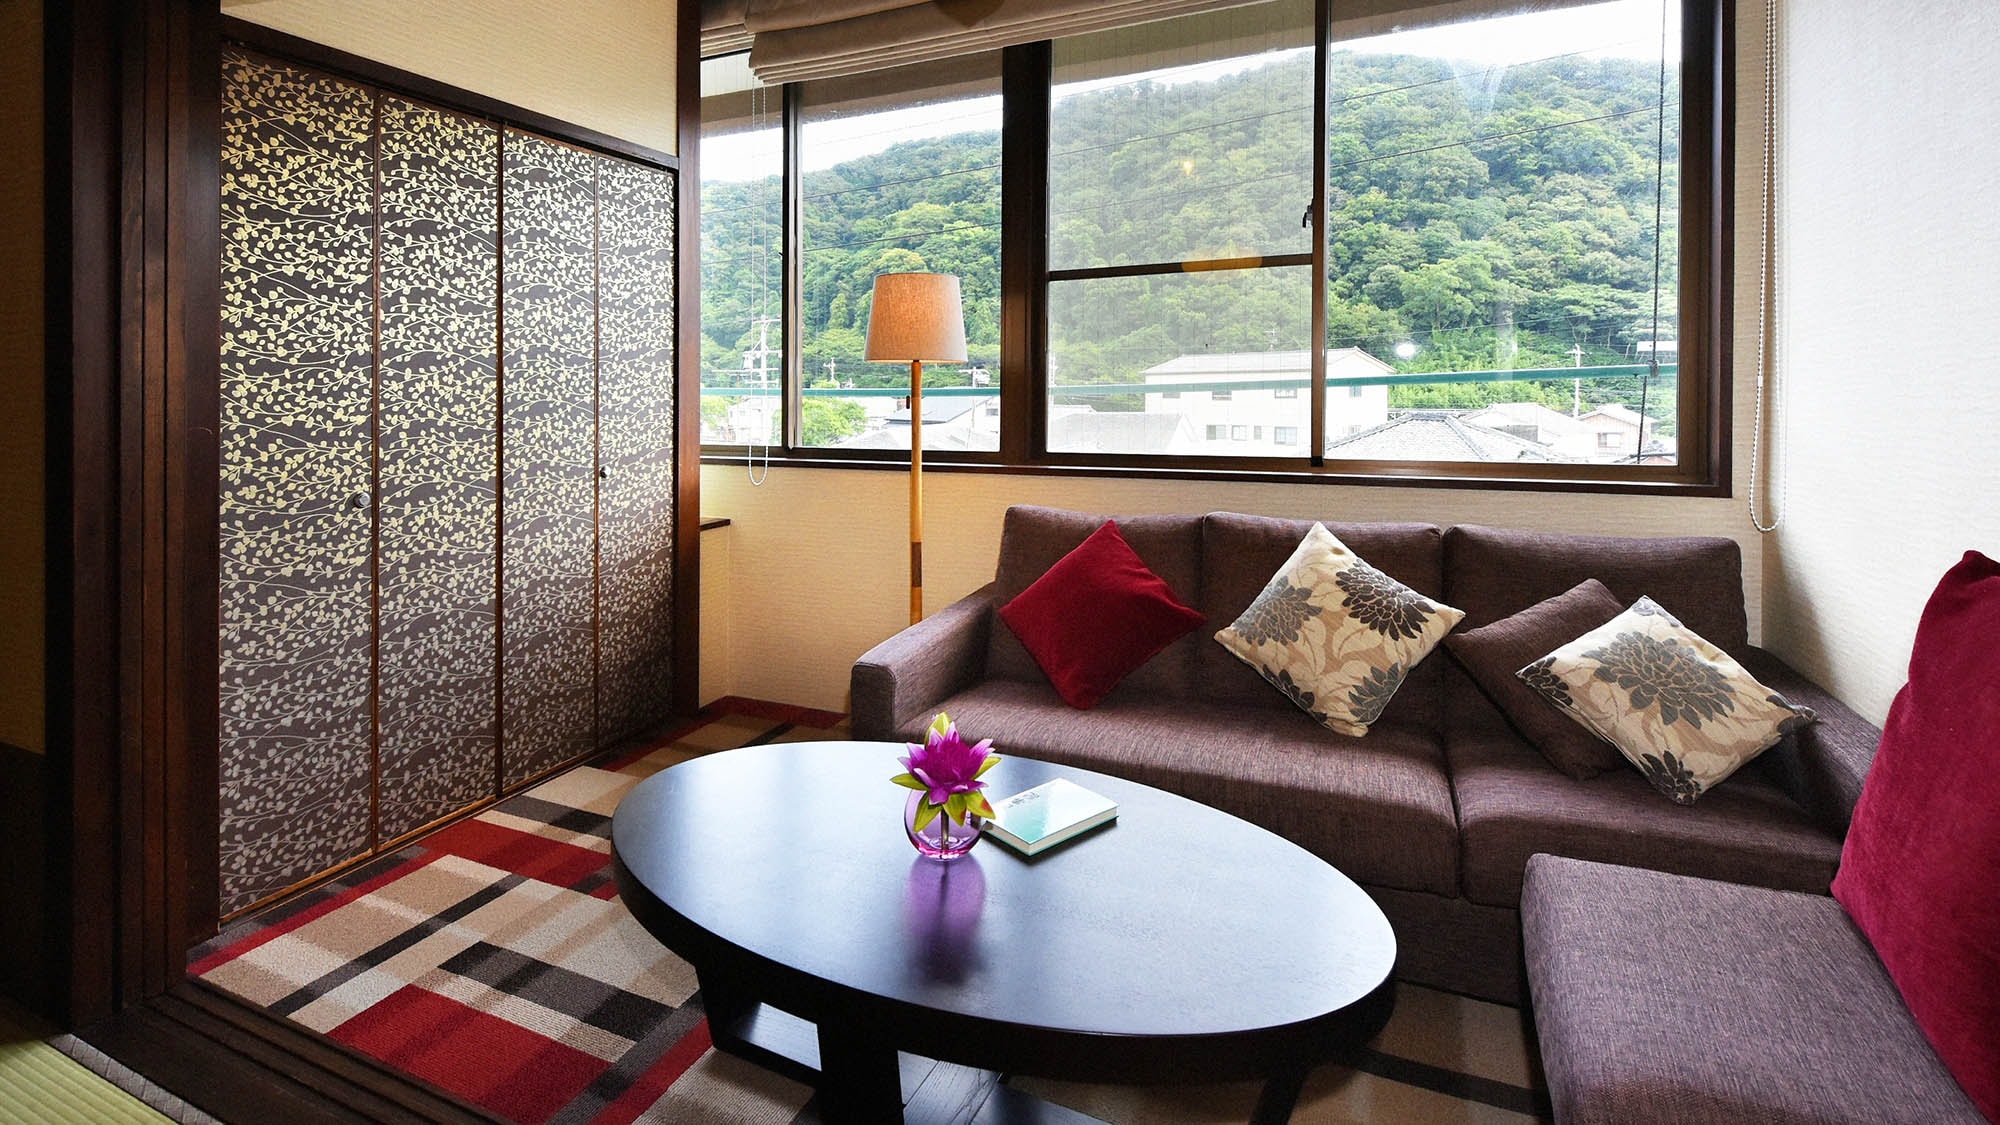 ・ [普通客房示例] 8 至 12 张榻榻米的日式房间。简单舒适的空间